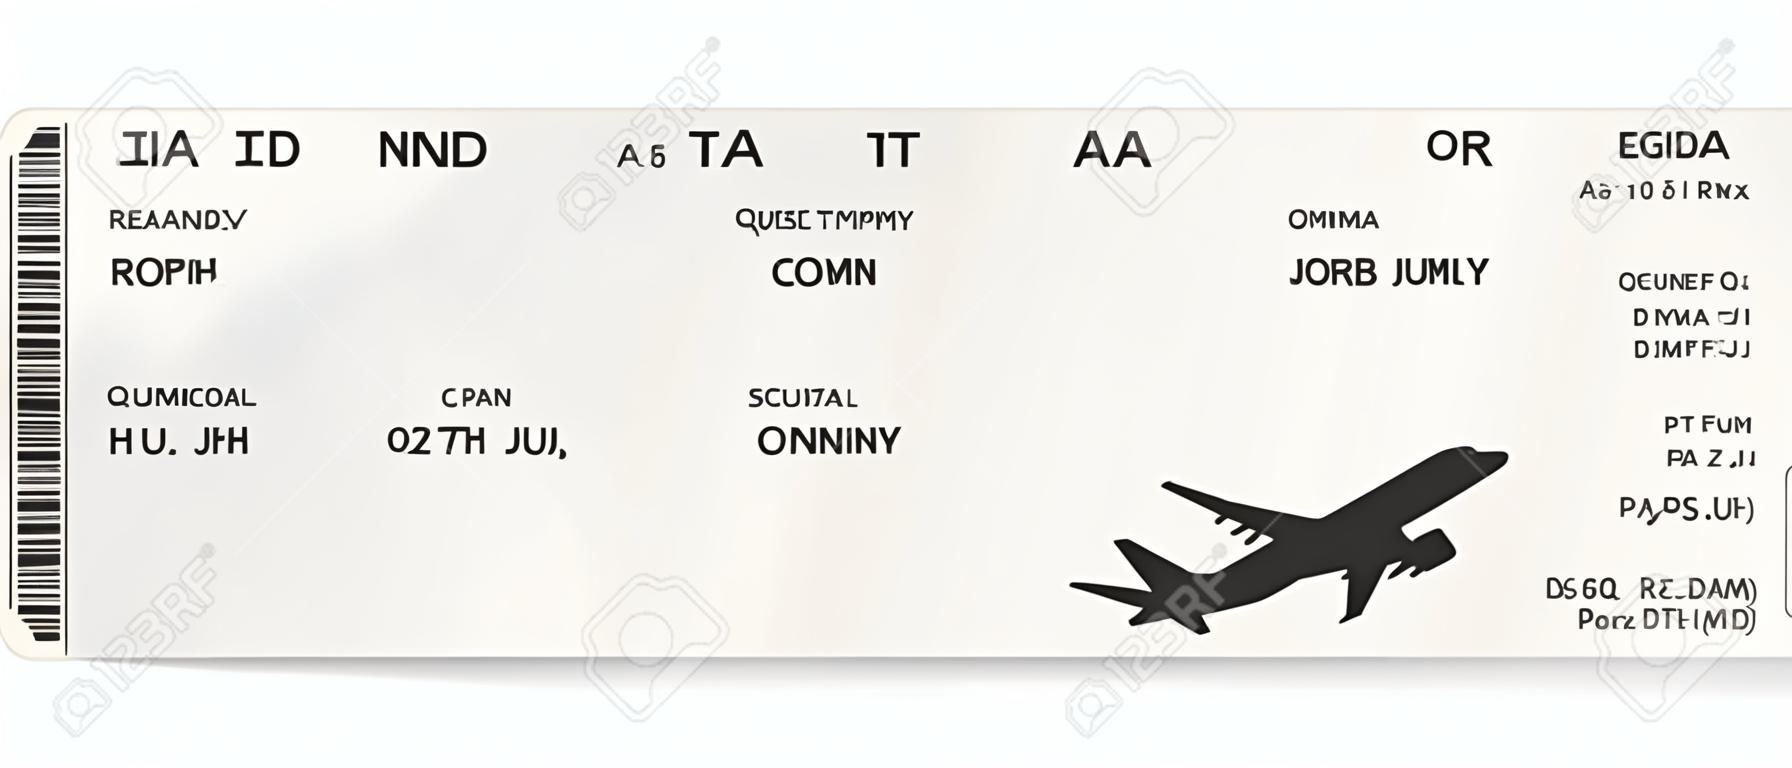 Conception de billet d'avion ou de carte d'embarquement réaliste bleu avec un temps de vol irréel et le nom du passager. Illustration vectorielle du modèle d'une carte d'embarquement